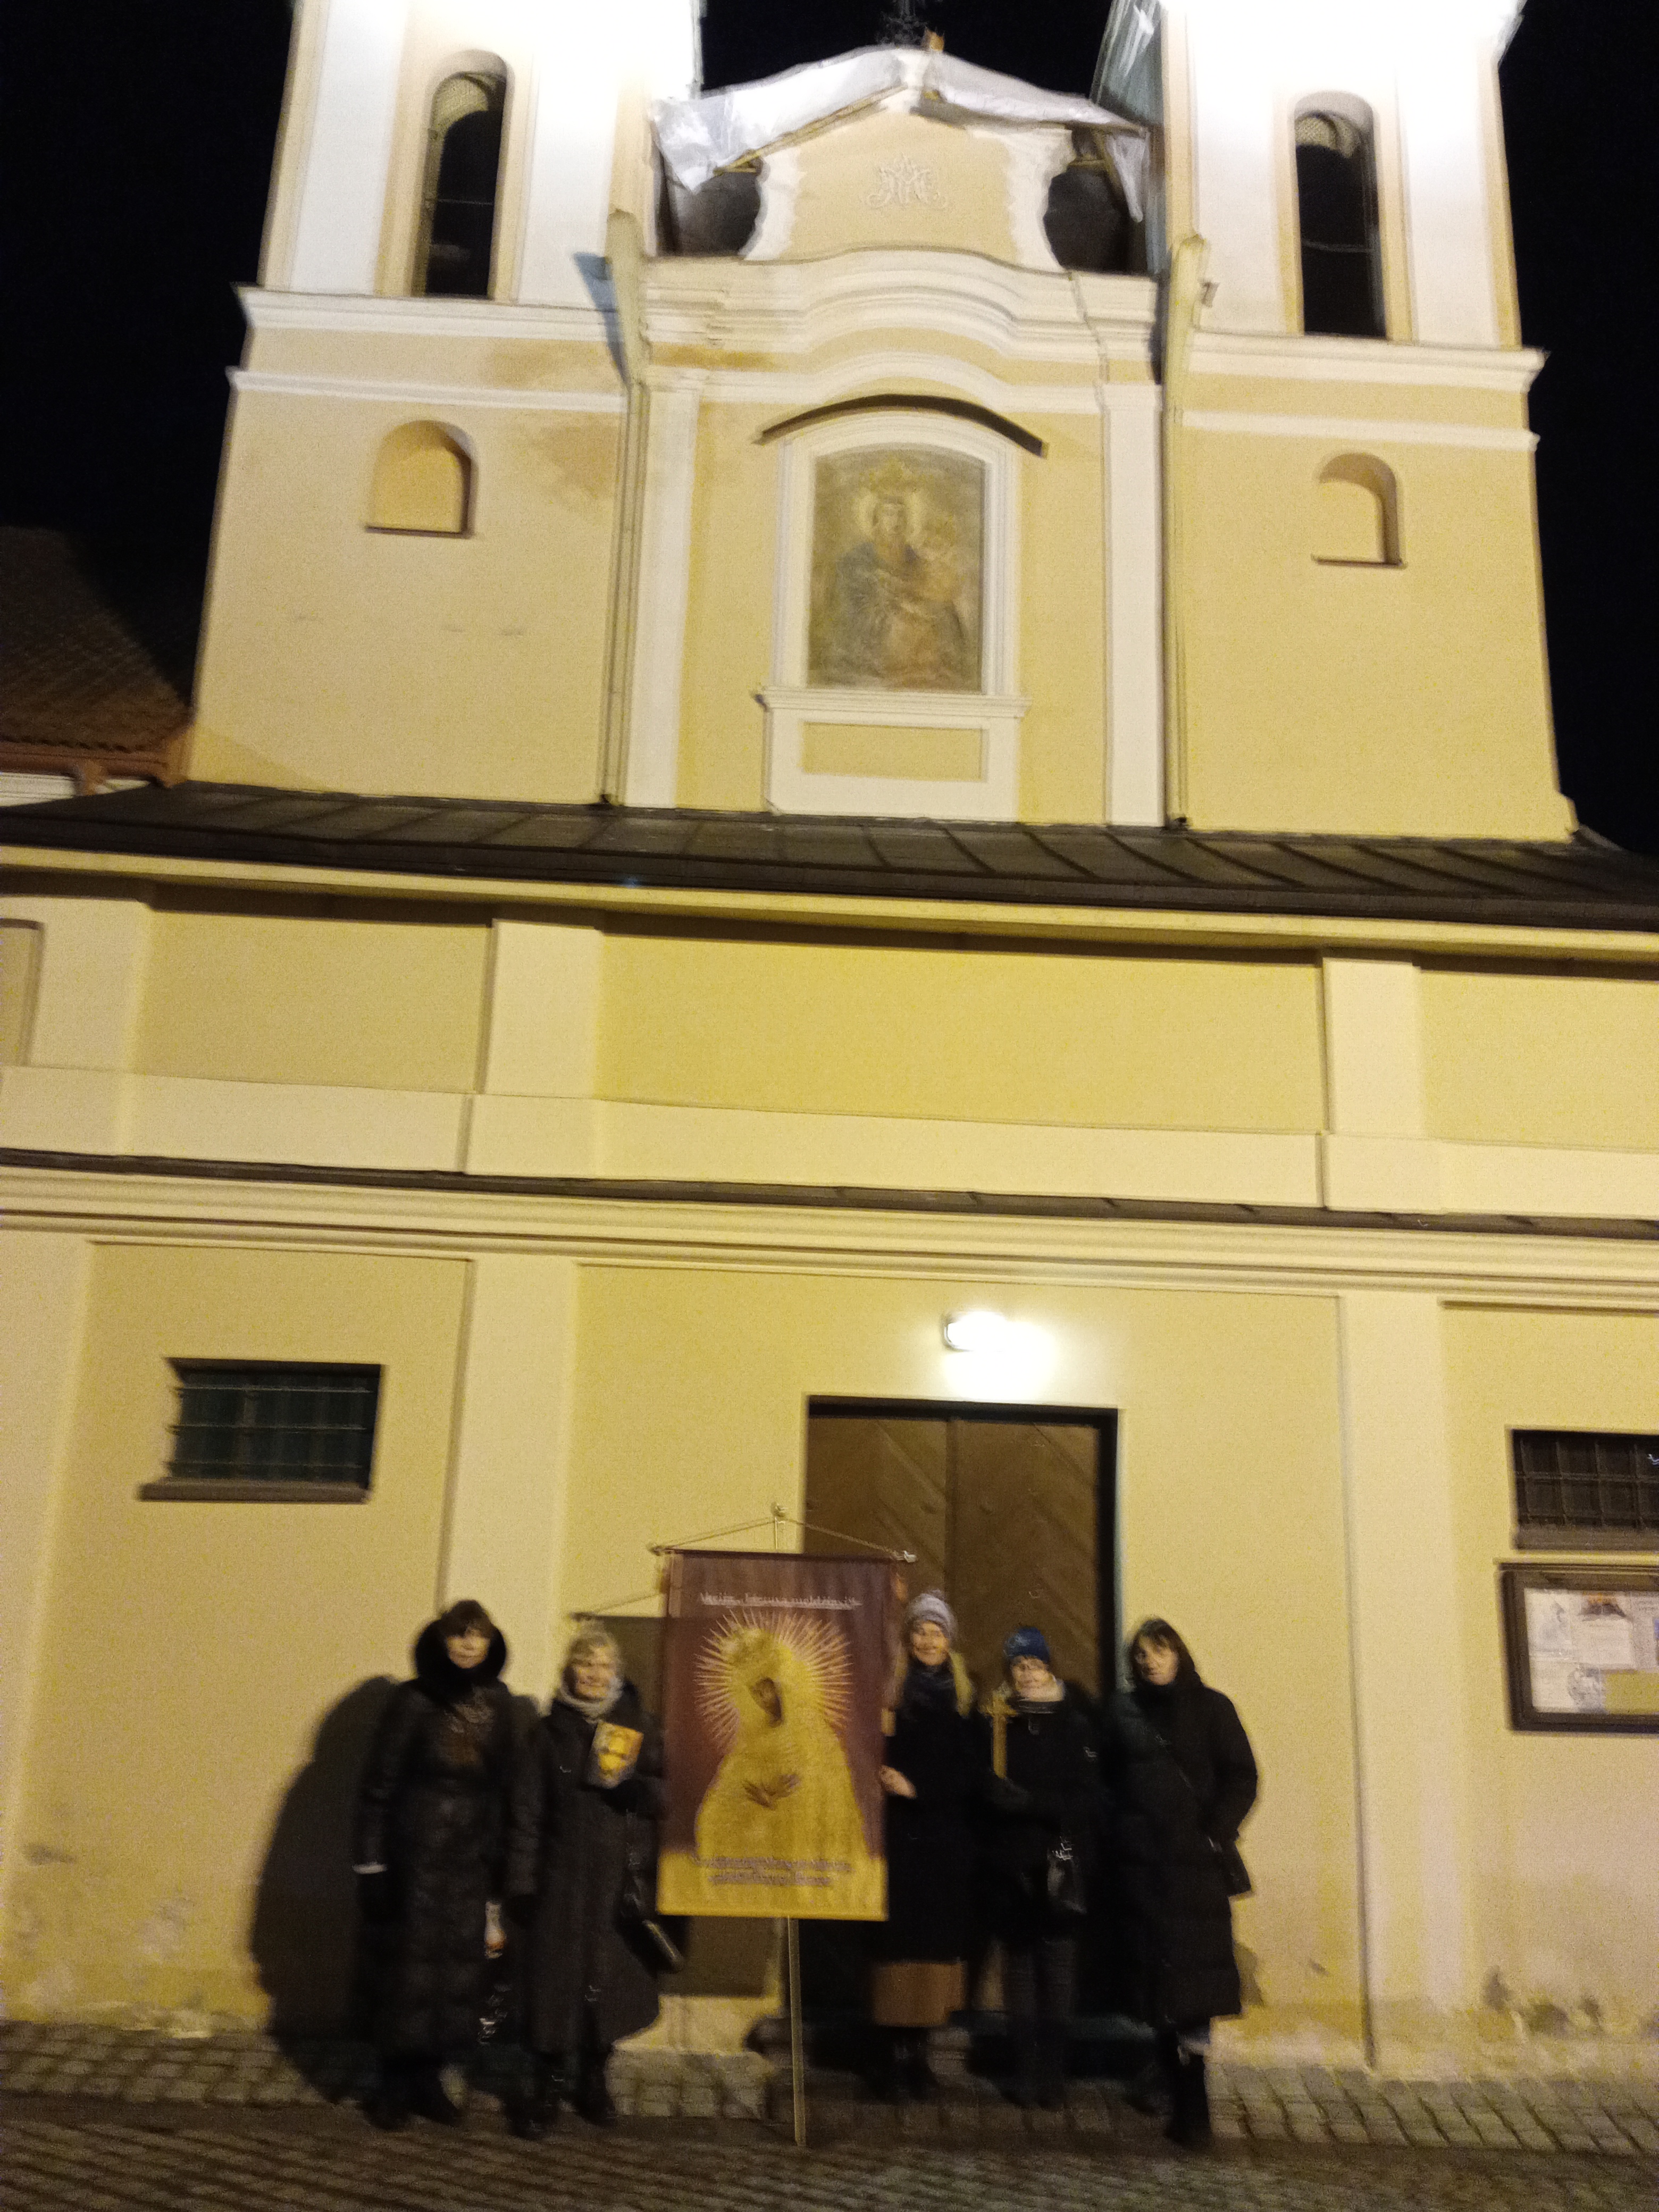 Vasario 15 d. Vilniuje meldėsi 5 žmonės
